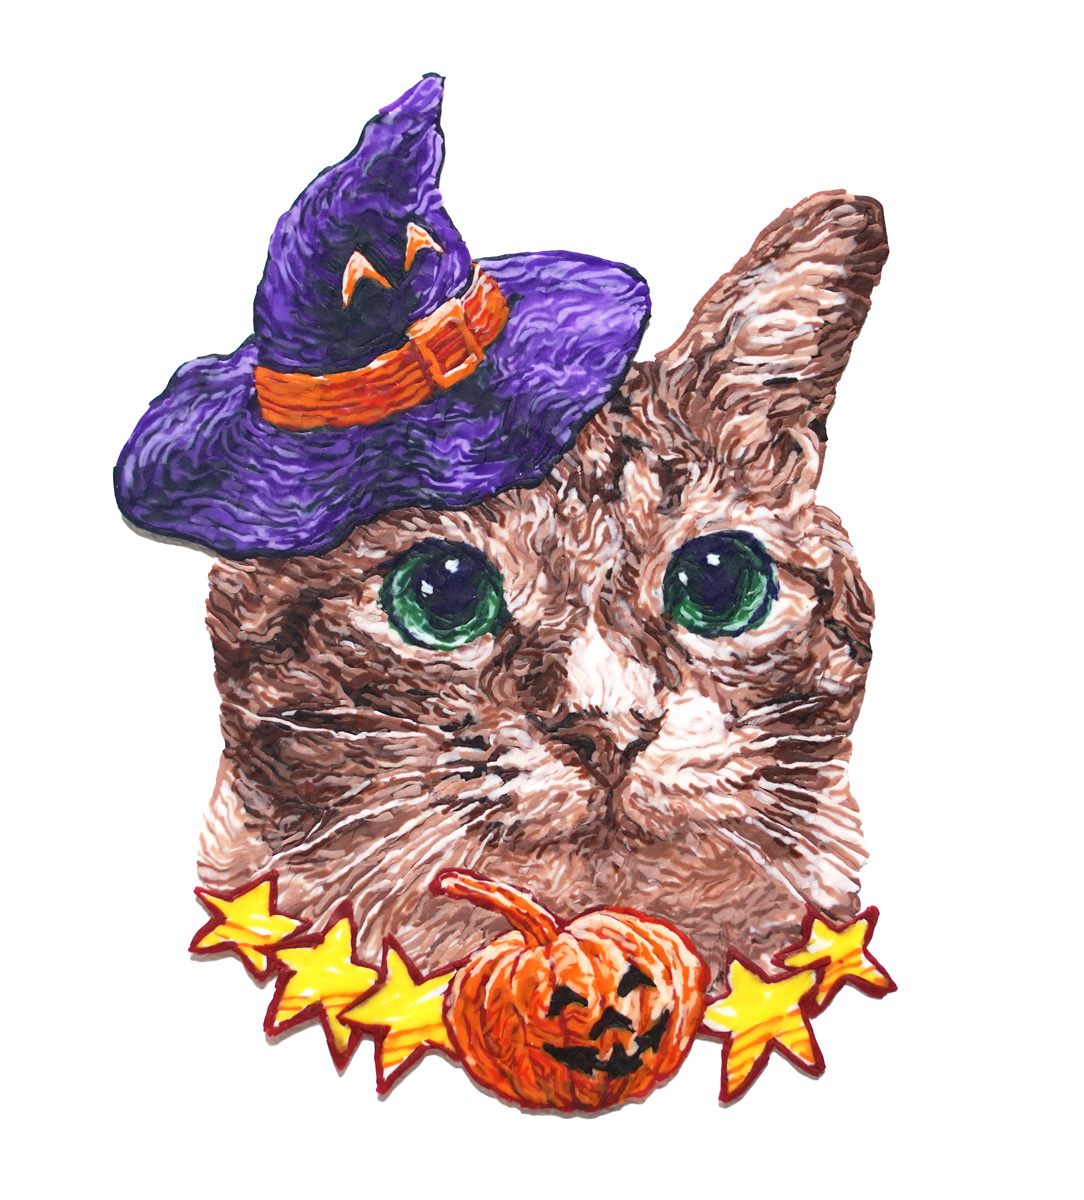 「もうすぐ ハロウィンという事で!粘土でつくった ハロウィン猫さん 完成しました!」|西浦 康太のイラスト